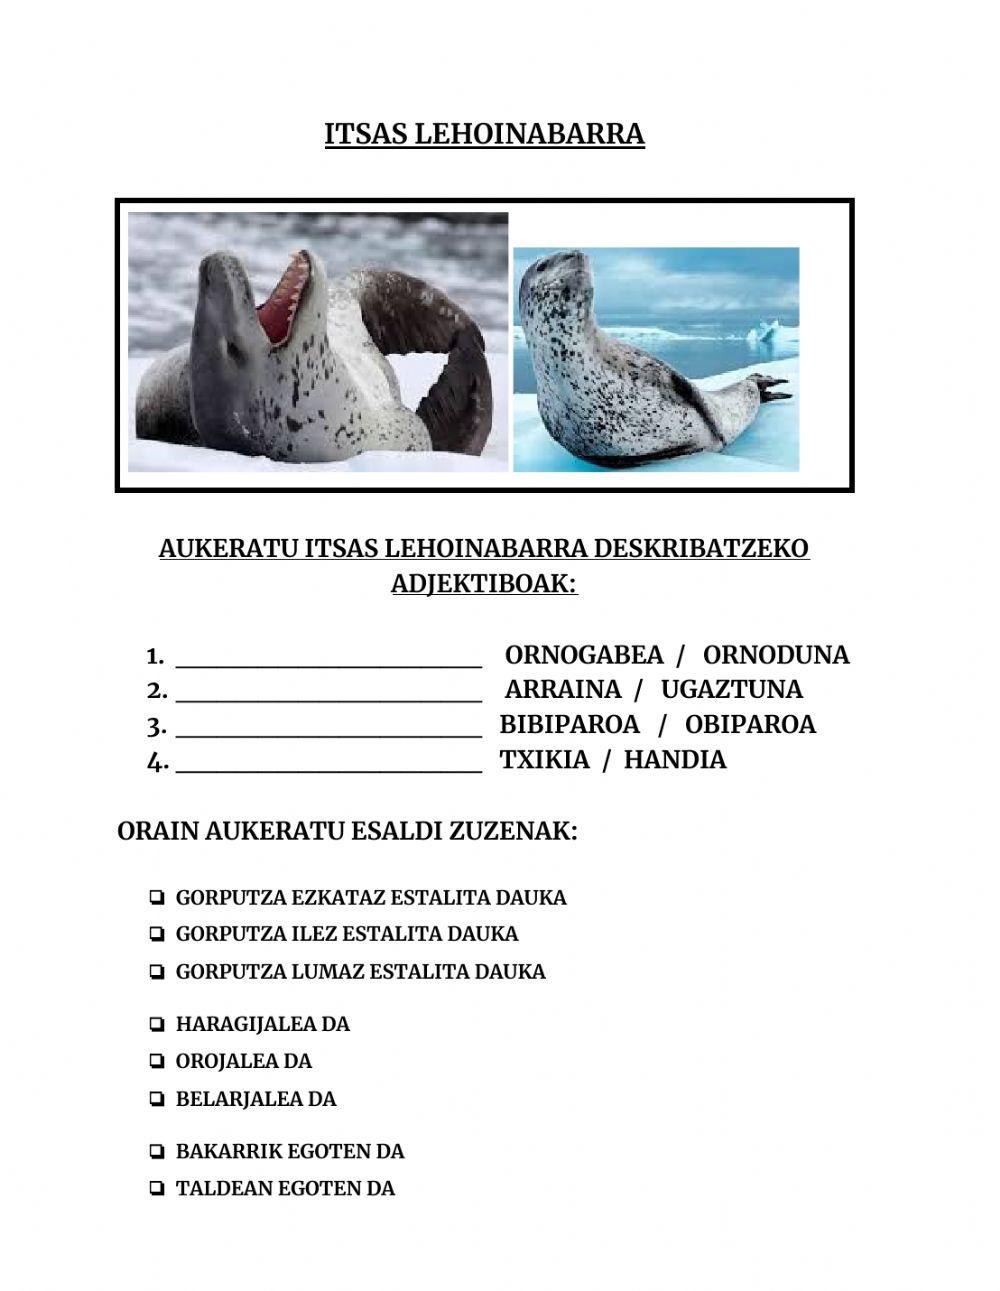 Antartidako animaliak- Itsas Lehoinabarra